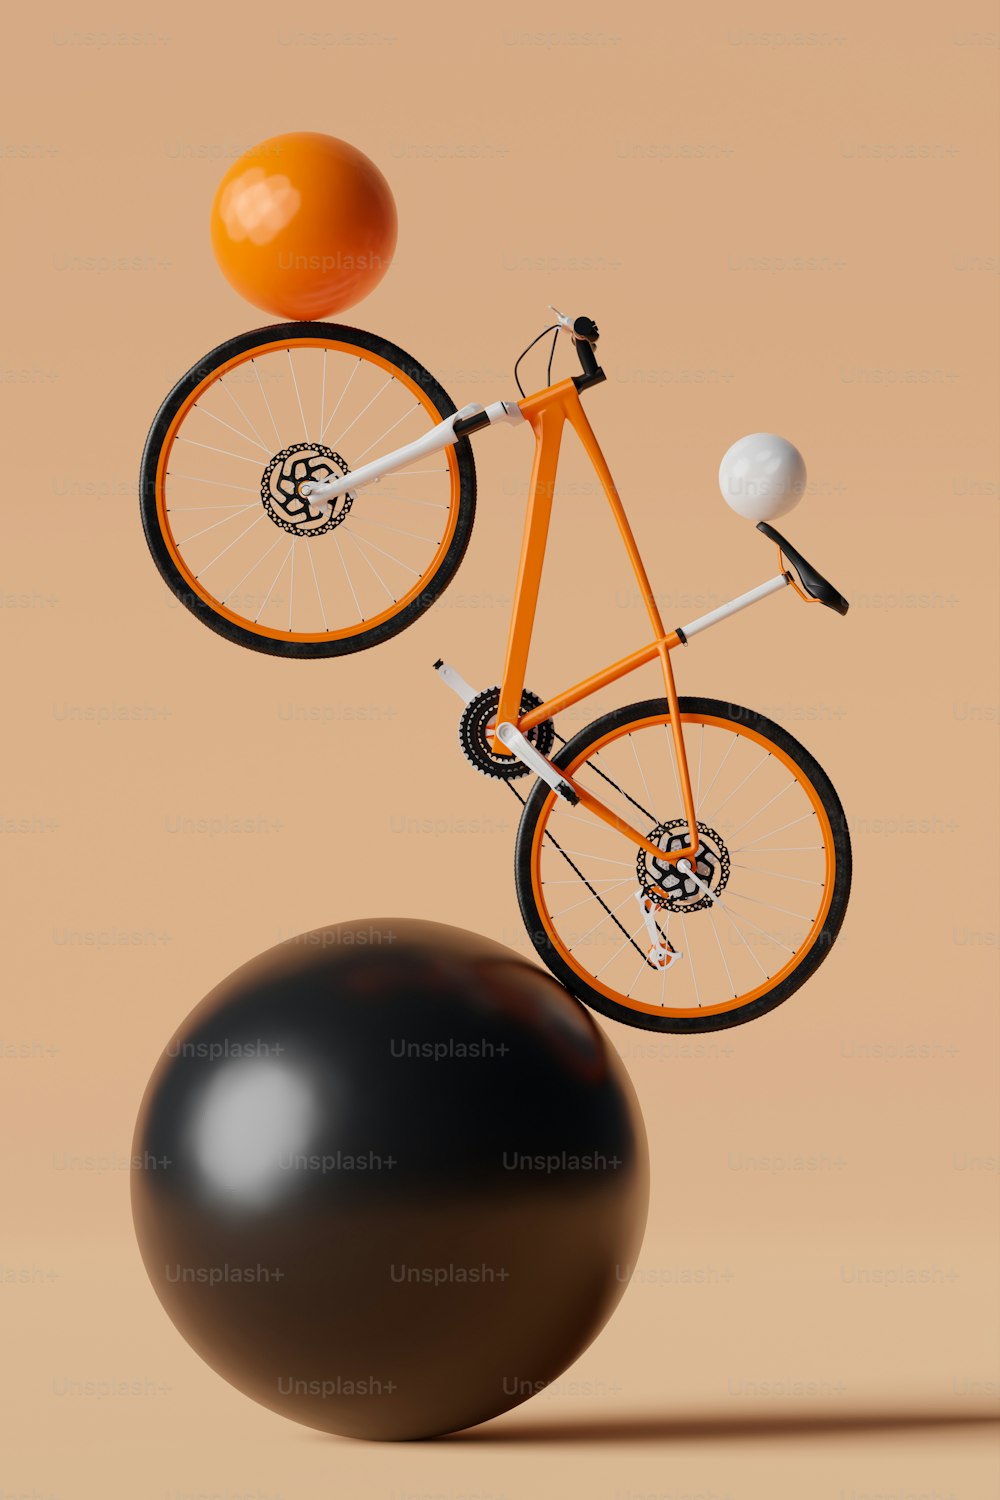 黒いボールでバラン�スをとるオレンジ色の自転車